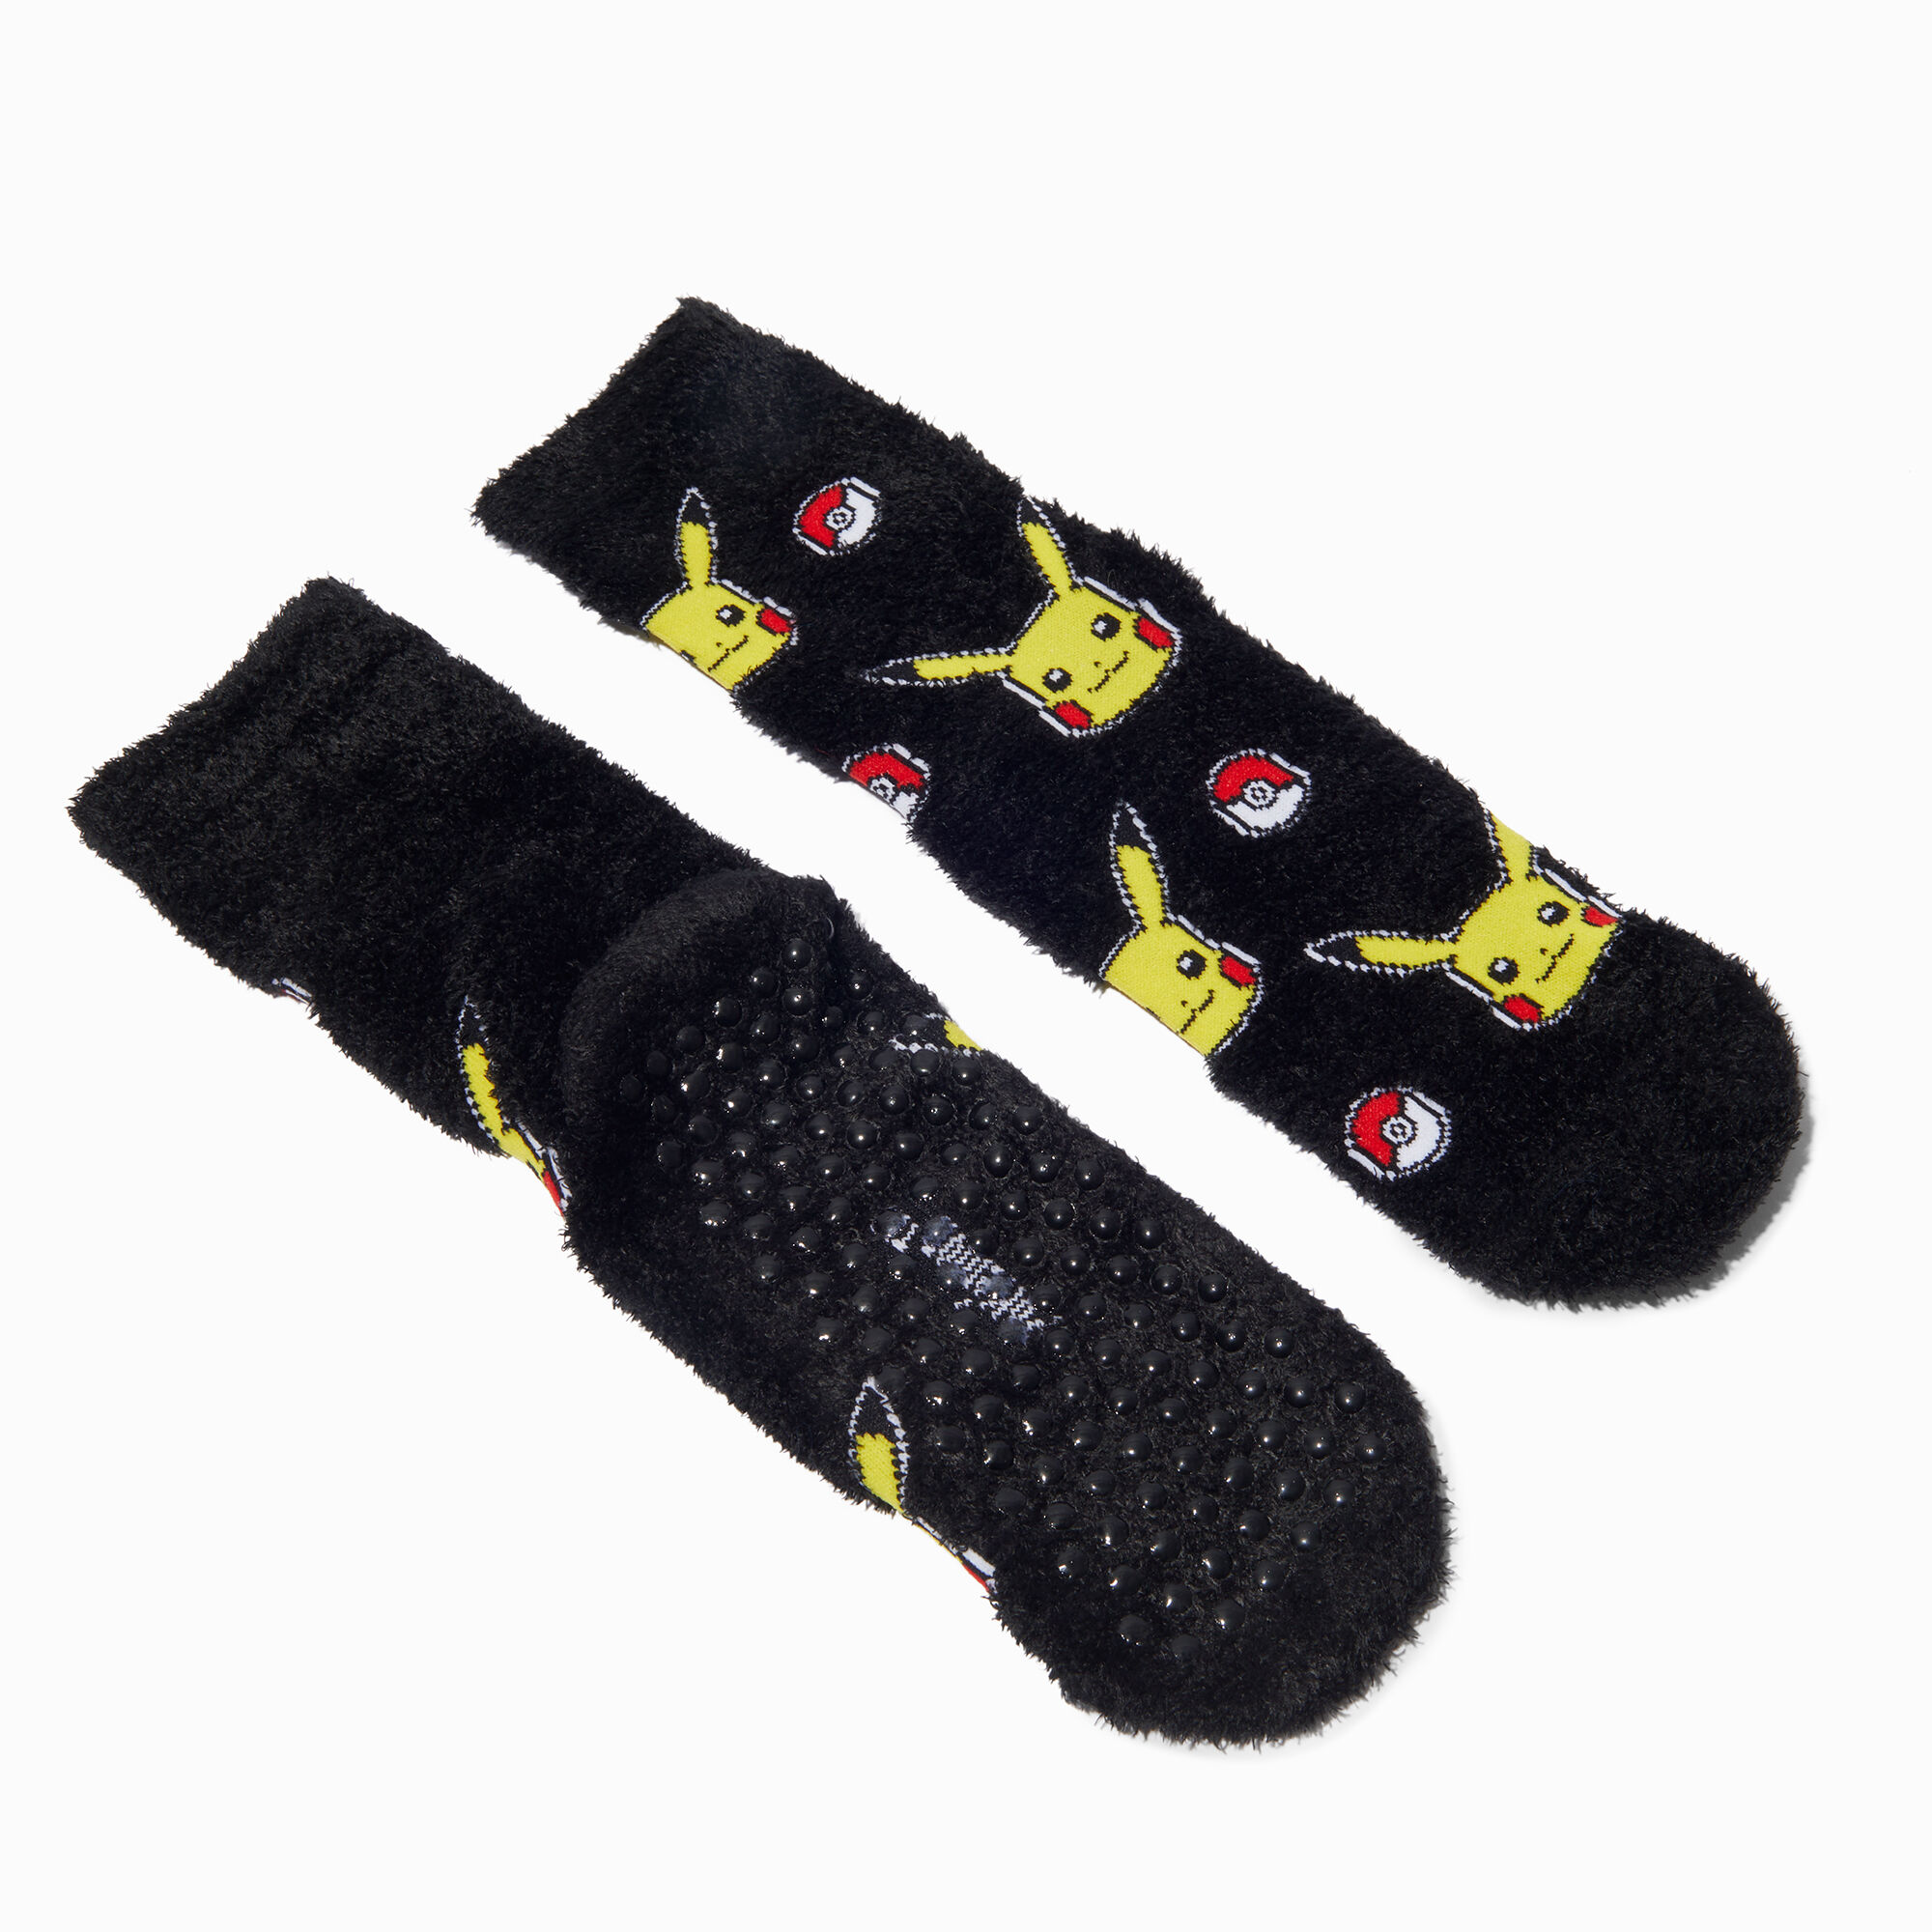 Crochet Slipper Socks: Crochet pattern | Ribblr